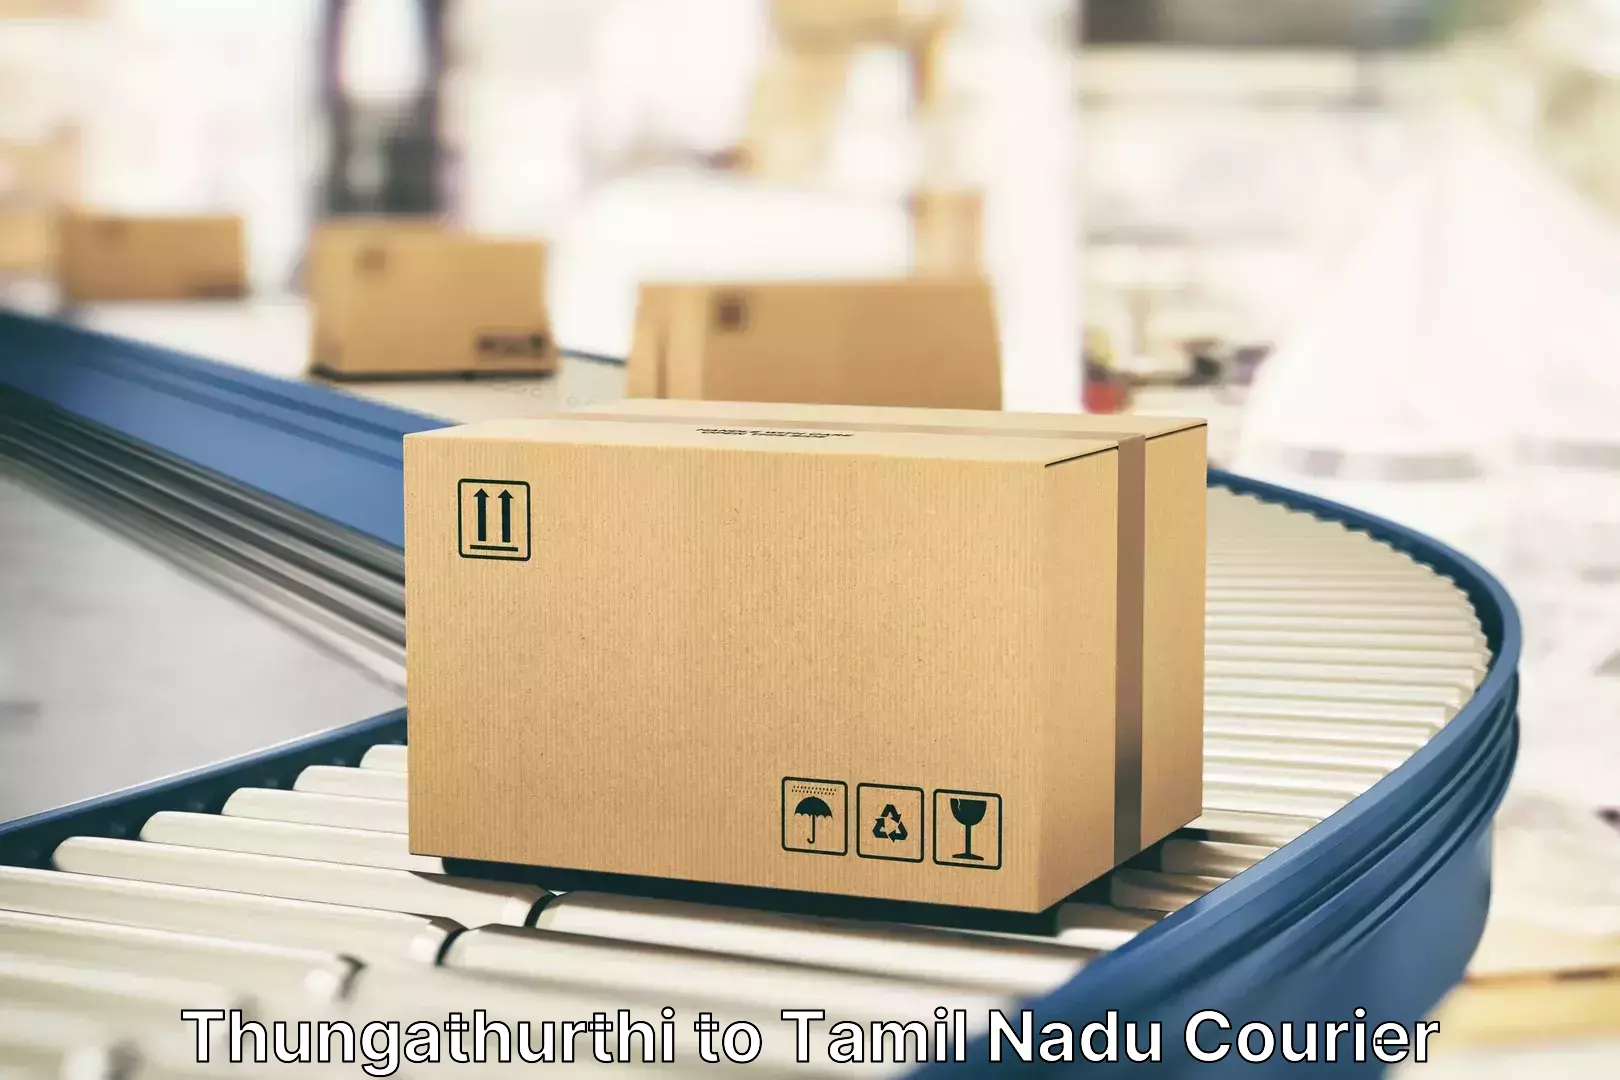 Luggage delivery optimization Thungathurthi to Tamil Nadu